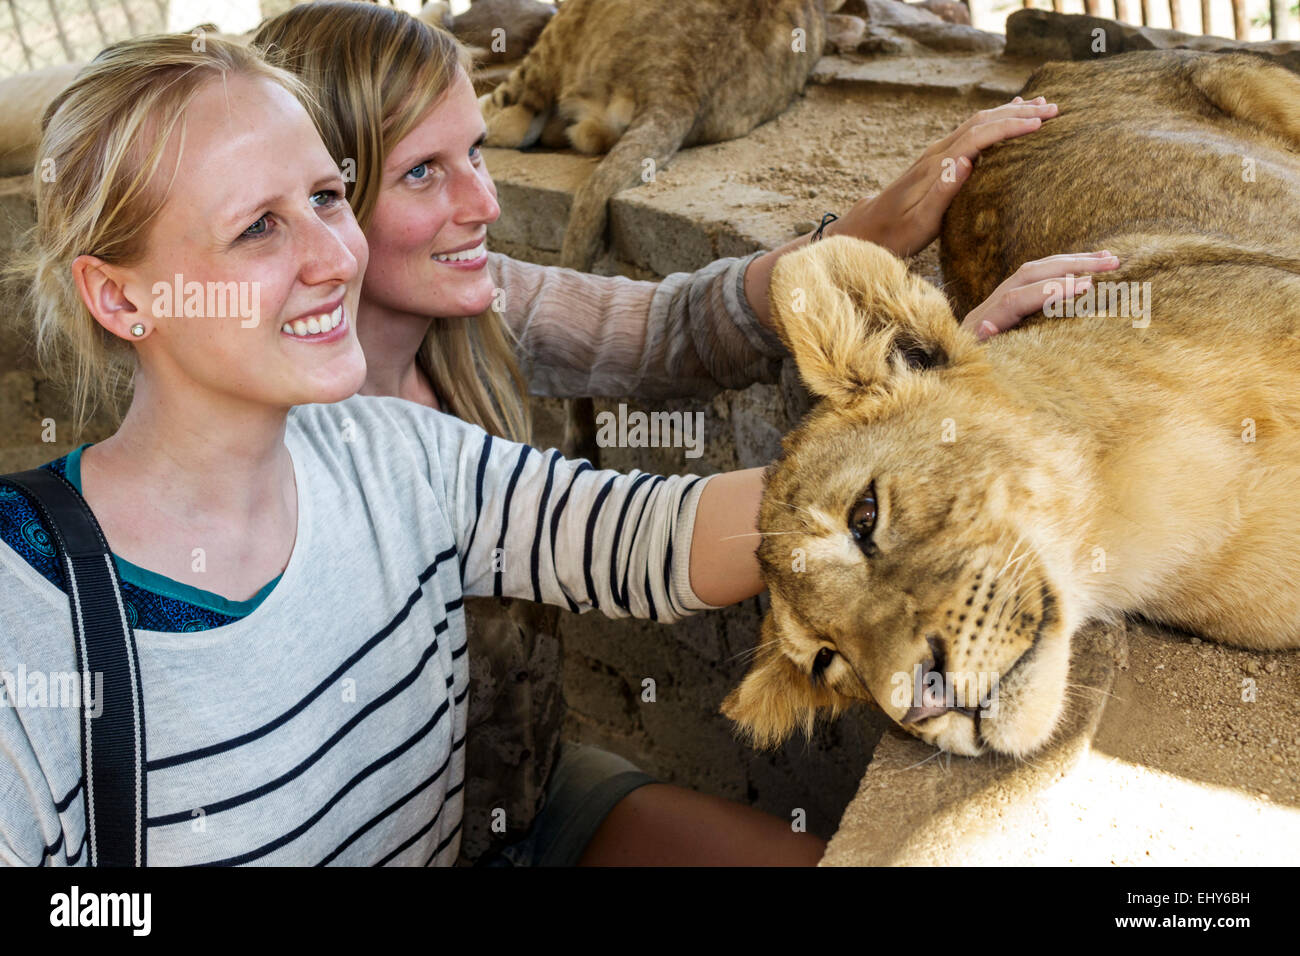 Johannesburgo Sudáfrica, Parque de los Leones, conservación de la vida silvestre, mujeres femeninas, cachorro de león, interacción,SAfri150304061 Foto de stock